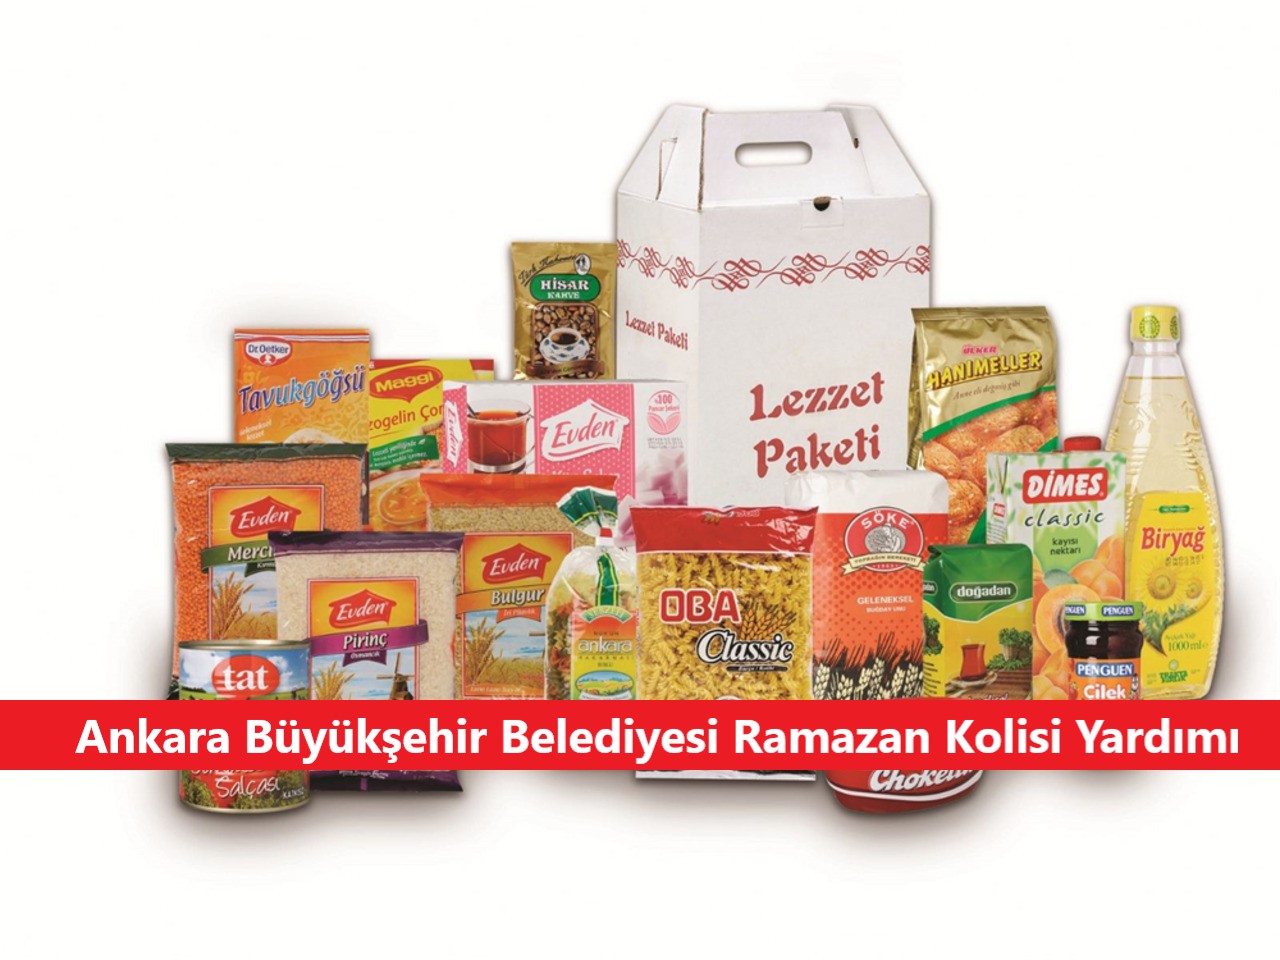 ankara büyükşehir belediyesi ramazan kolisi yardımı